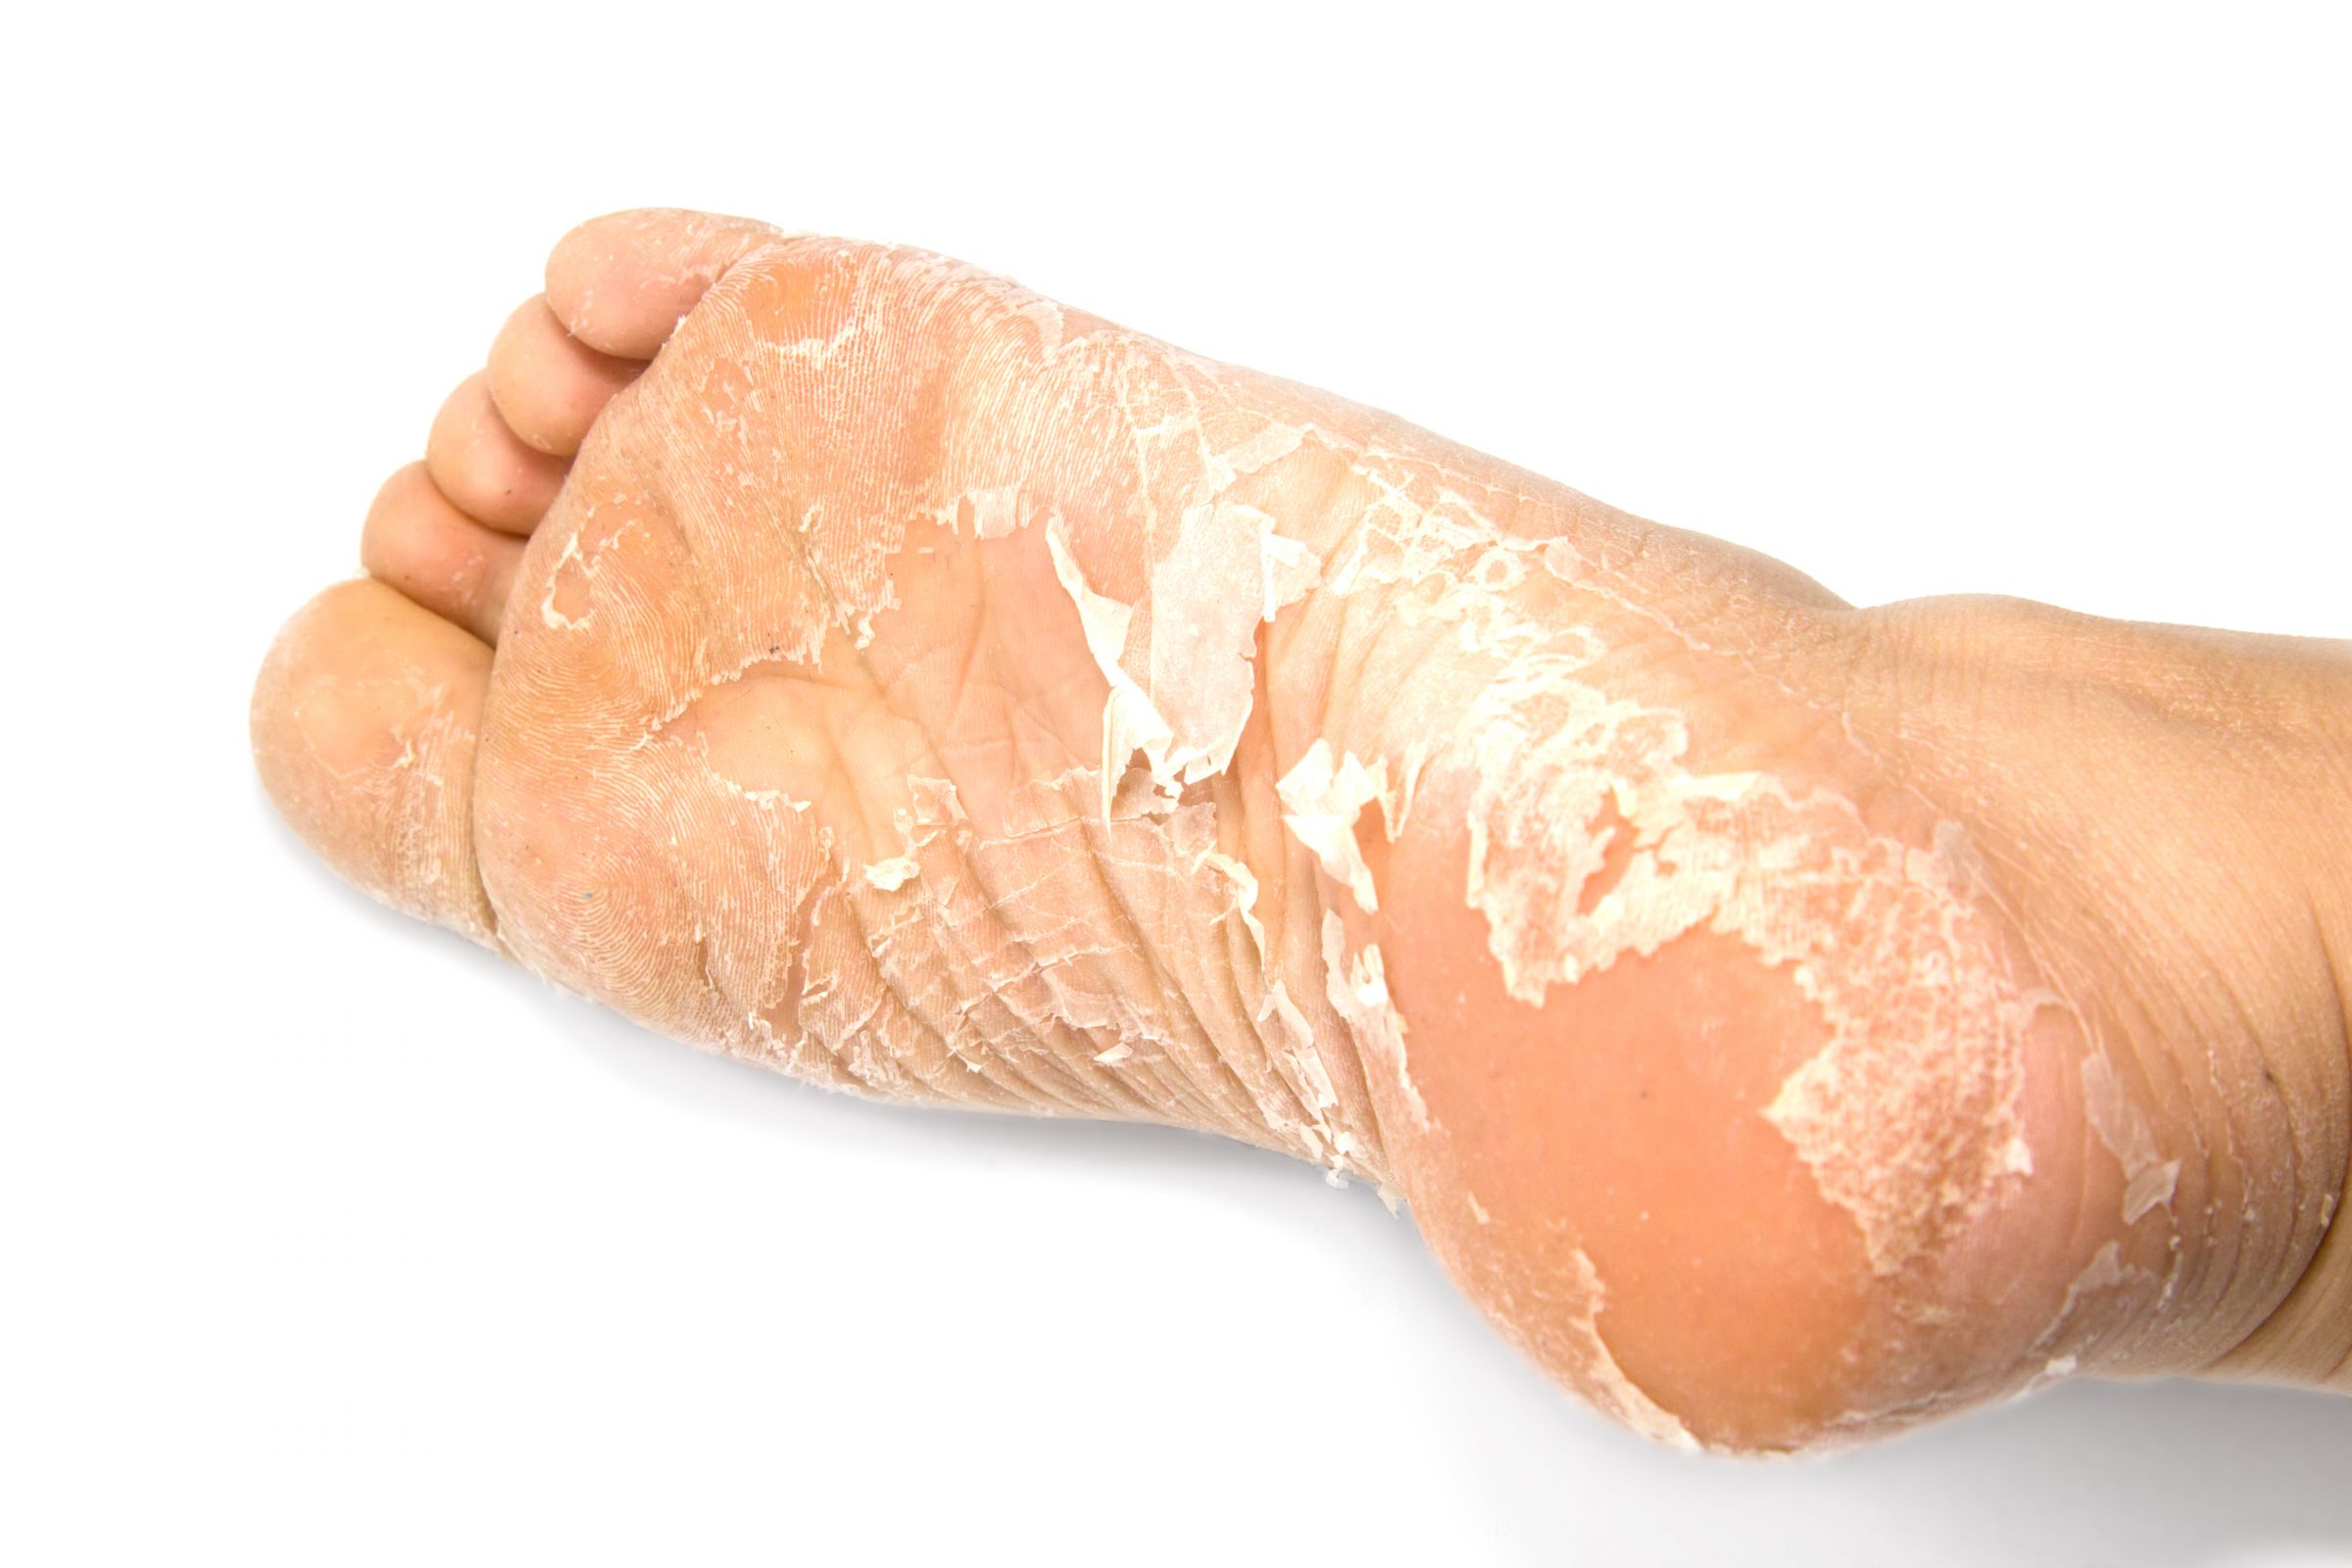 قناع تقشير القدم هو أحد أنواع الأقنعة التي يمكن لعملاء BIOCROWN شرائها.